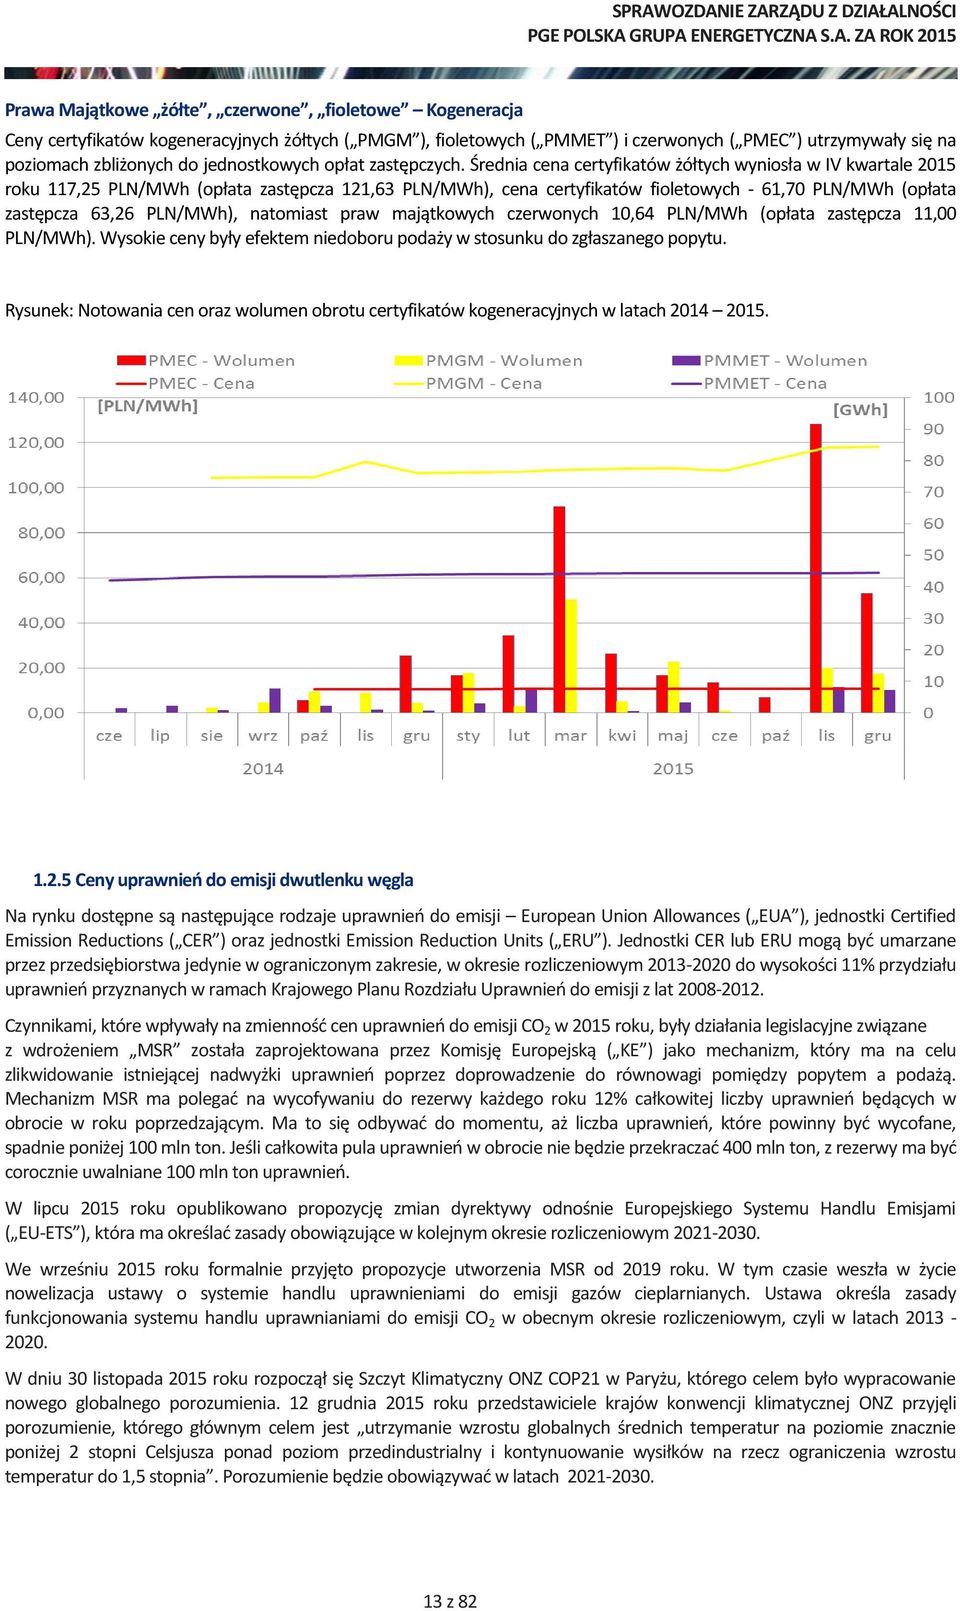 Średnia cena certyfikatów żółtych wyniosła w IV kwartale 2015 roku 117,25 PLN/MWh (opłata zastępcza 121,63 PLN/MWh), cena certyfikatów fioletowych - 61,70 PLN/MWh (opłata zastępcza 63,26 PLN/MWh),